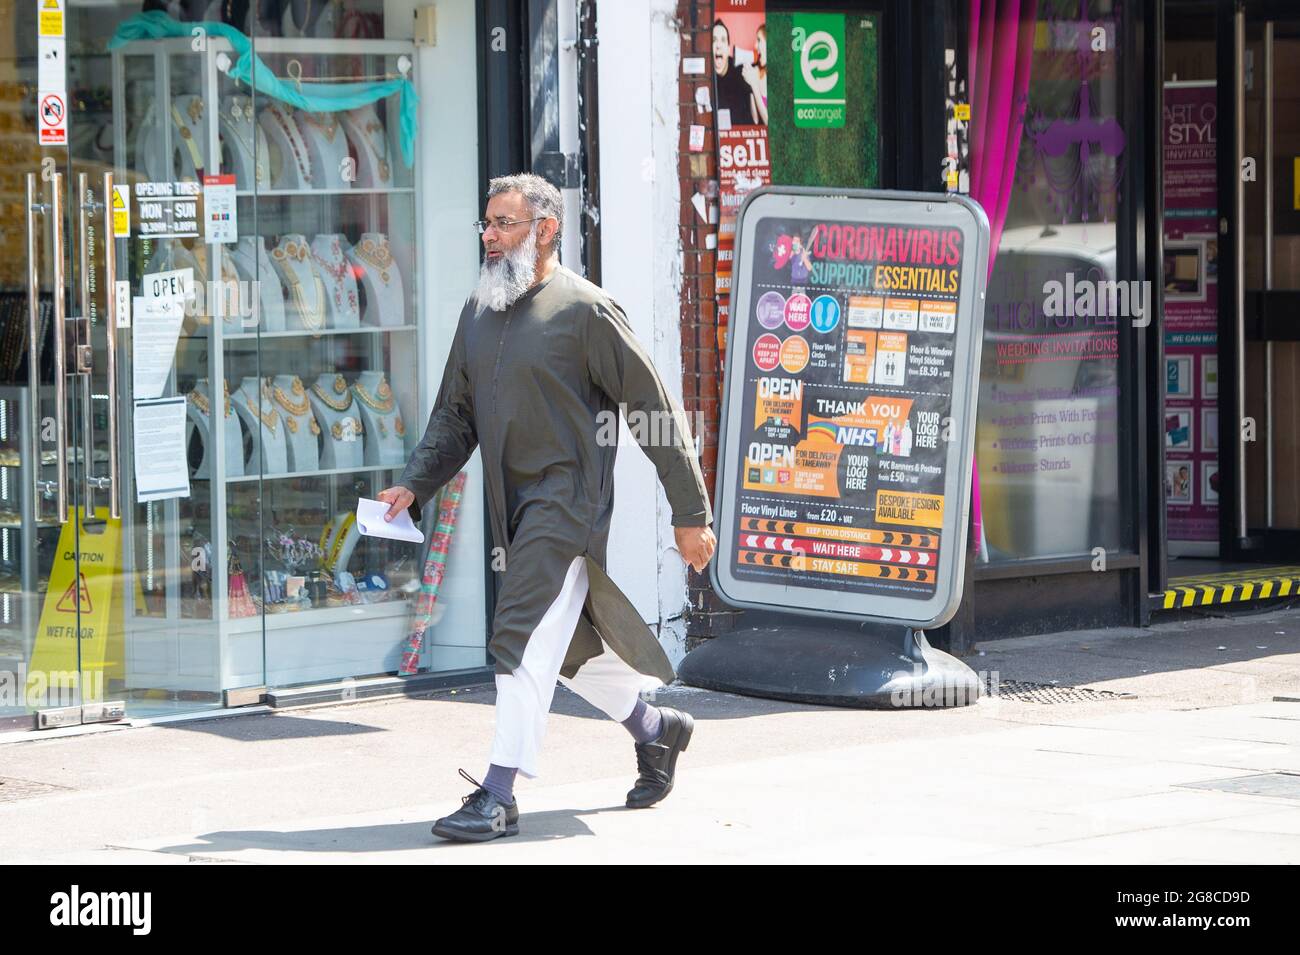 El predicador radical Anjem Choudary en Ilford, al este de Londres, después de que las restricciones a su discurso en público después de su liberación de la prisión llegaron a su fin. Fecha de la imagen: Lunes 19 de julio de 2021. Foto de stock